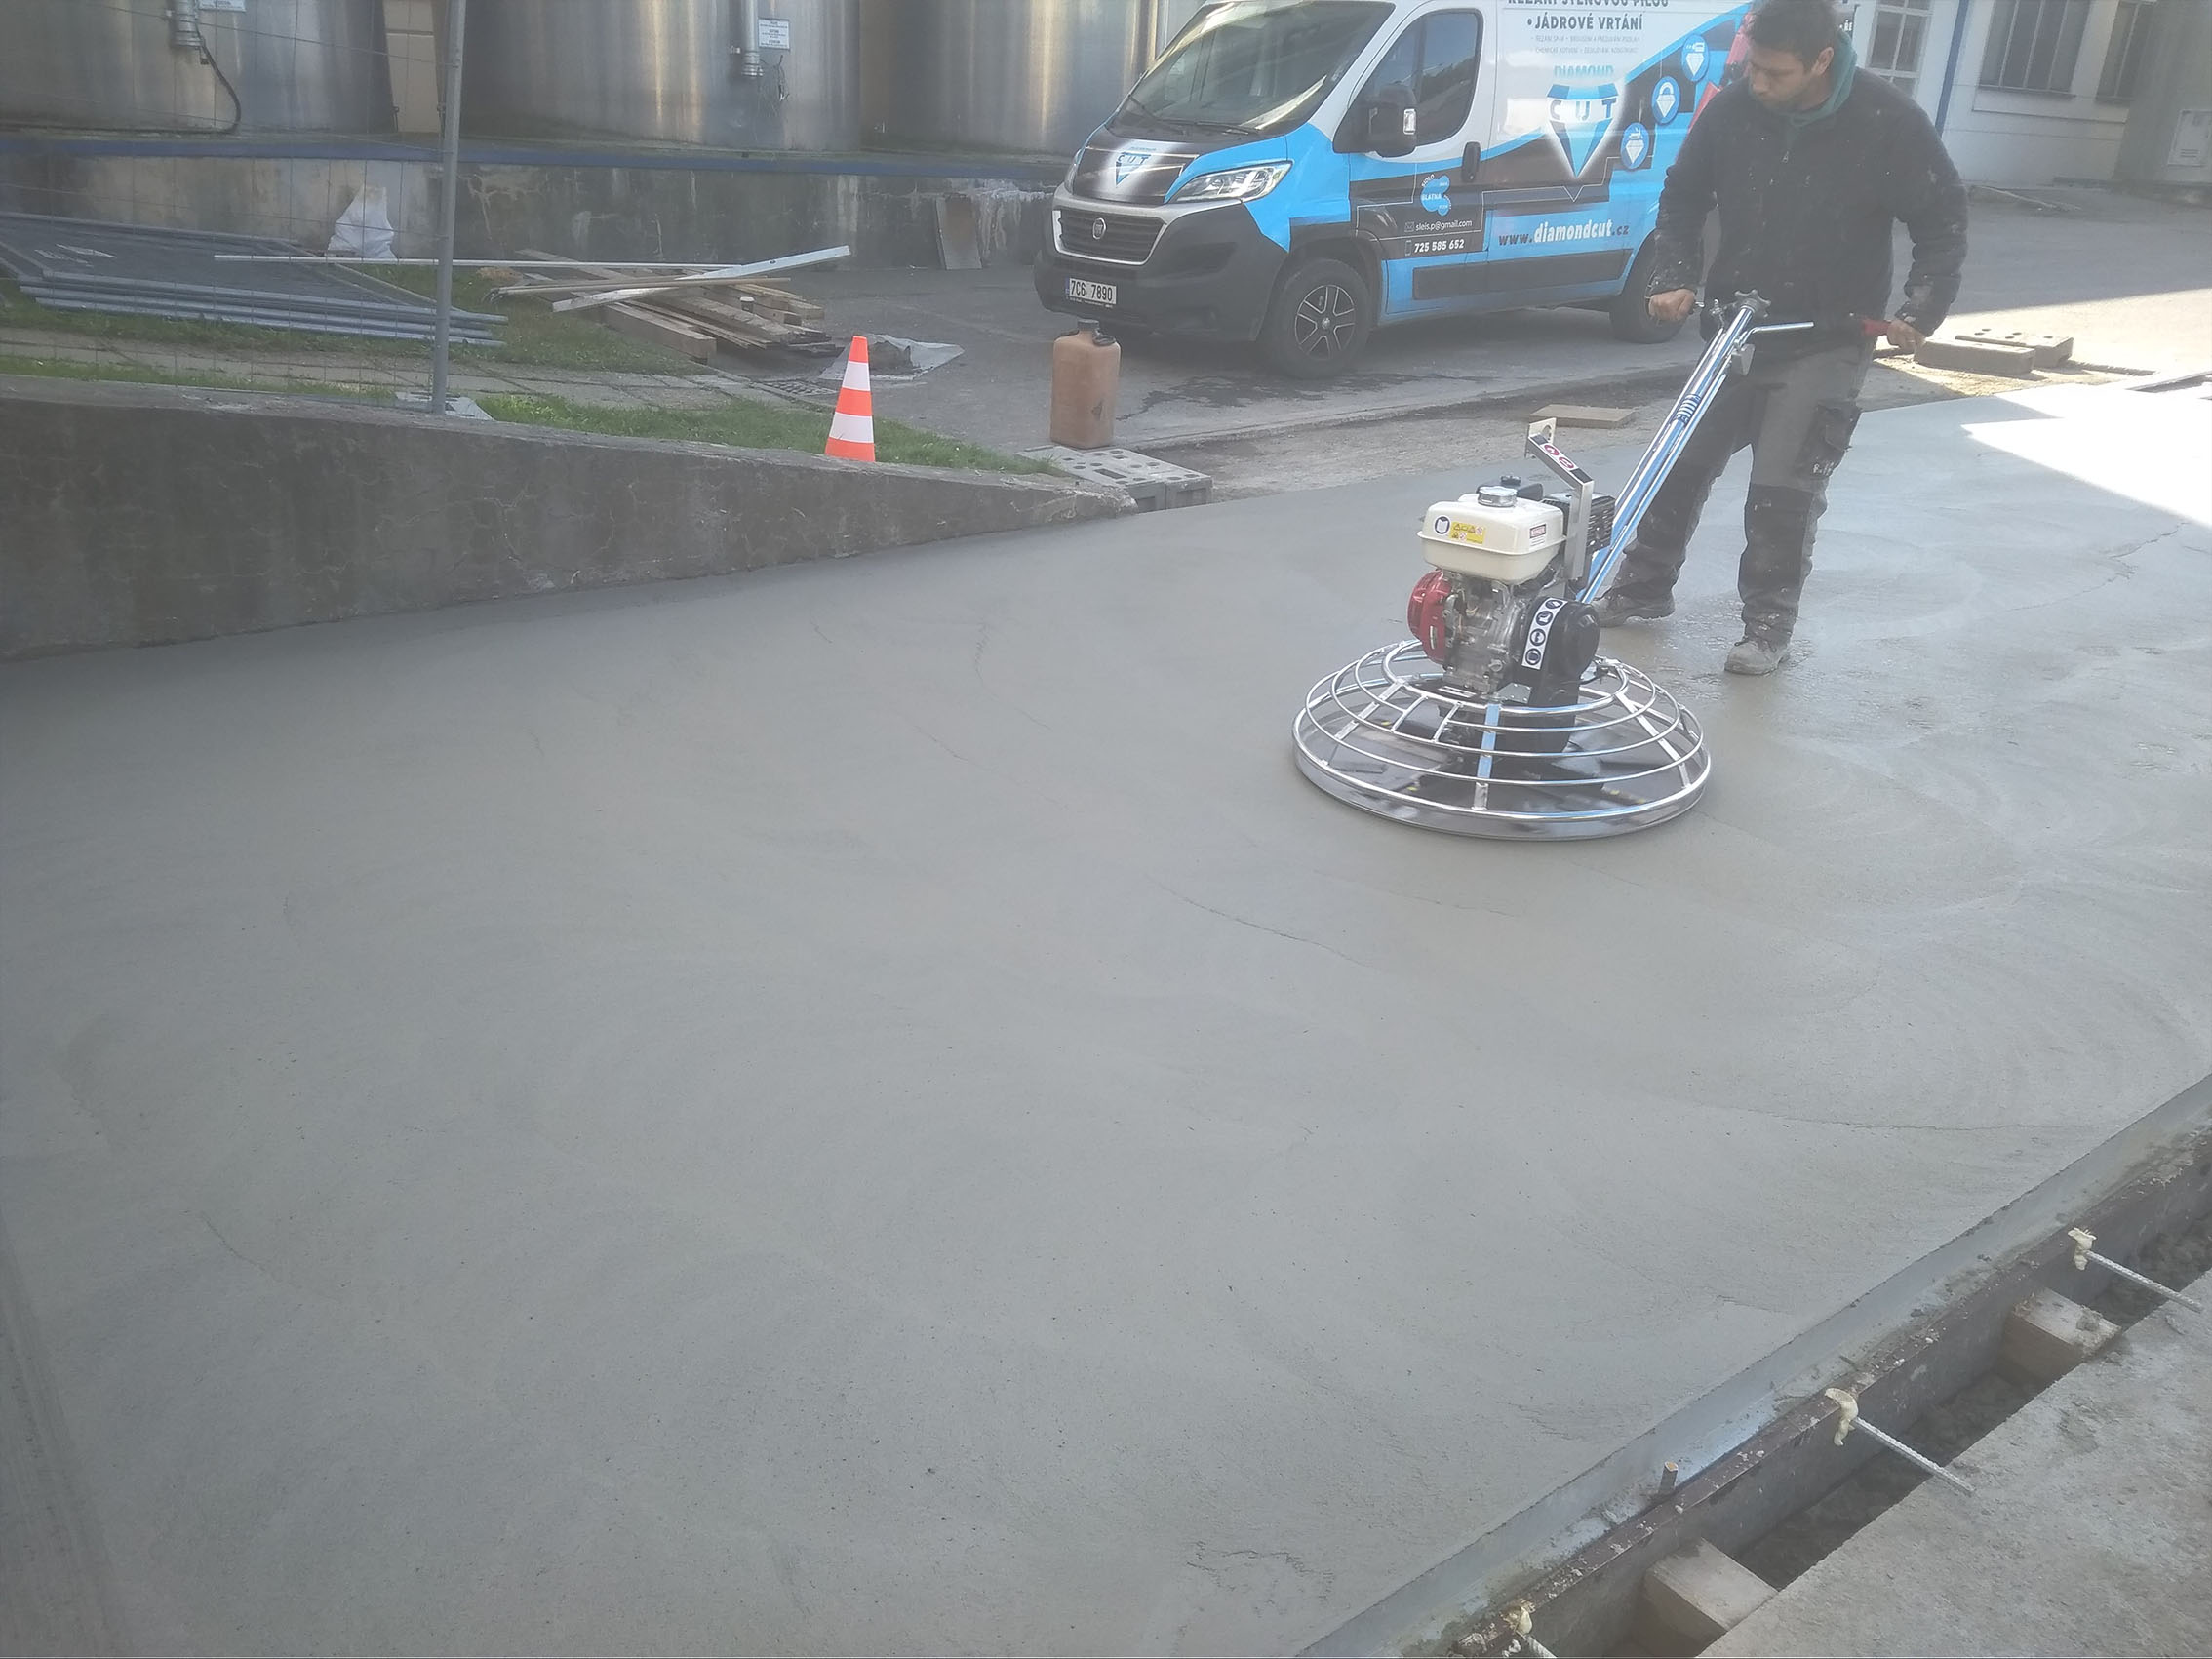 Strojně hlazené betonové podlahy